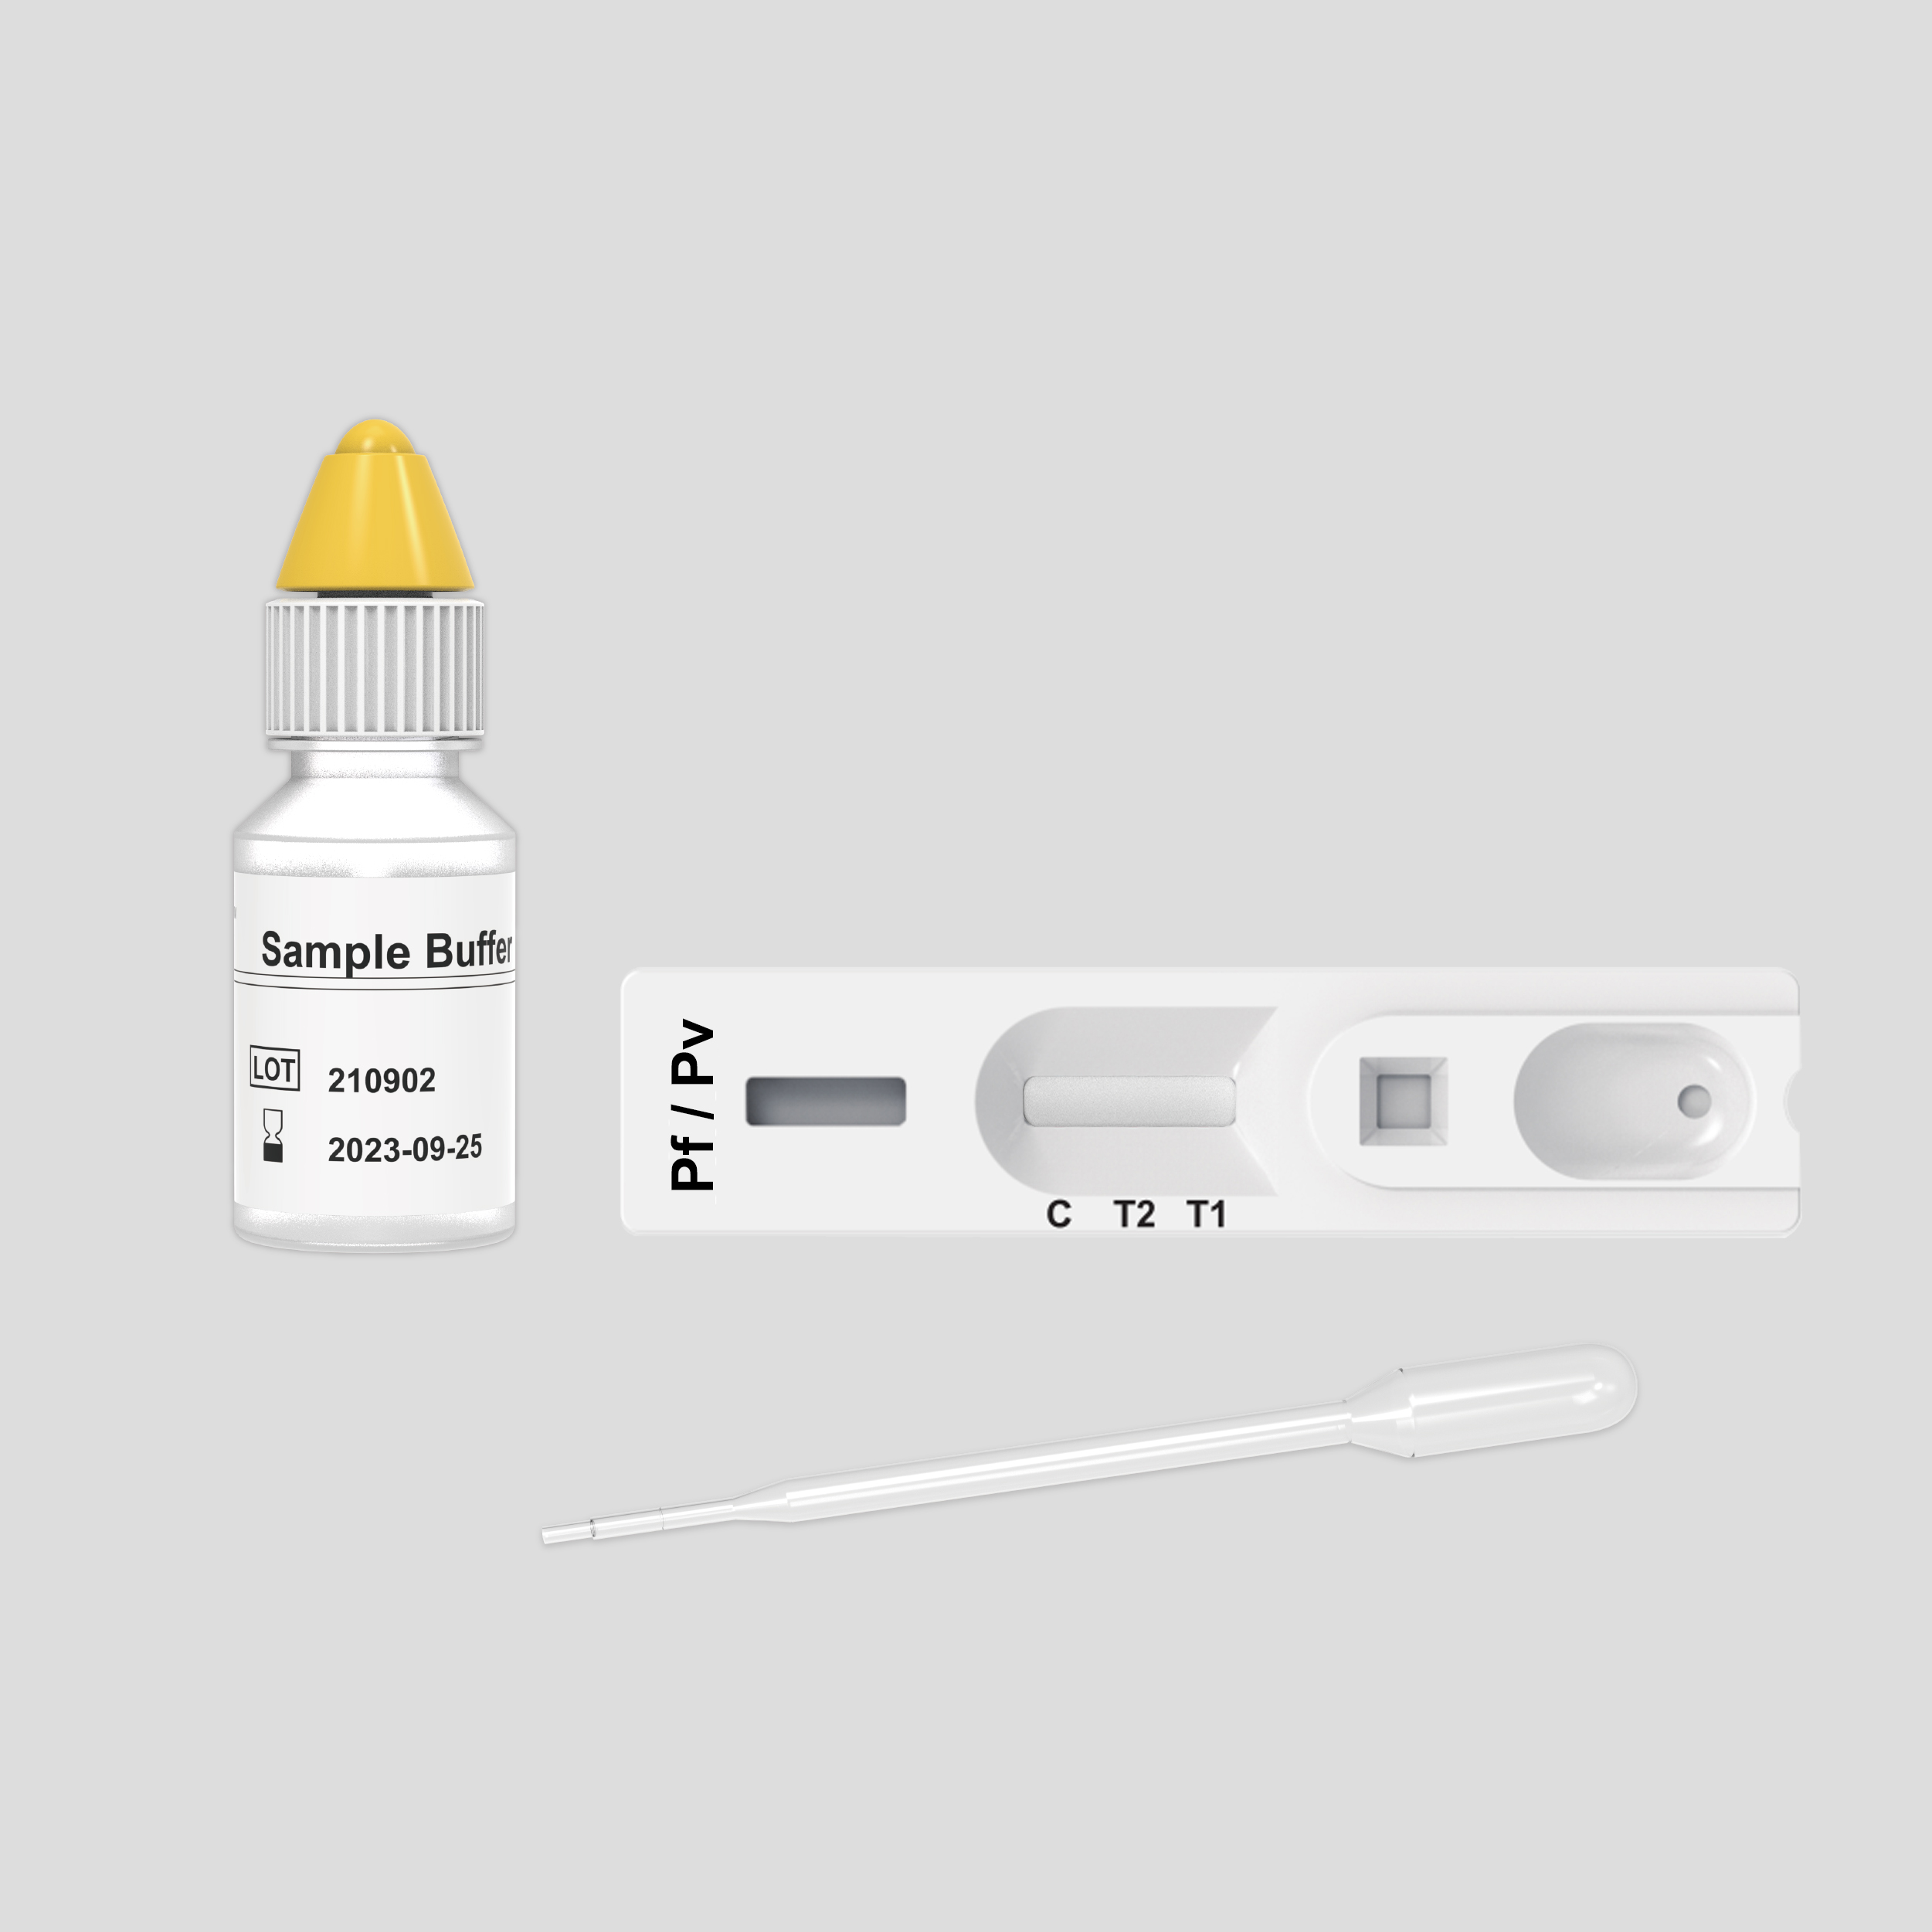 Malaria Pf/Pv Antigen Rapid Test